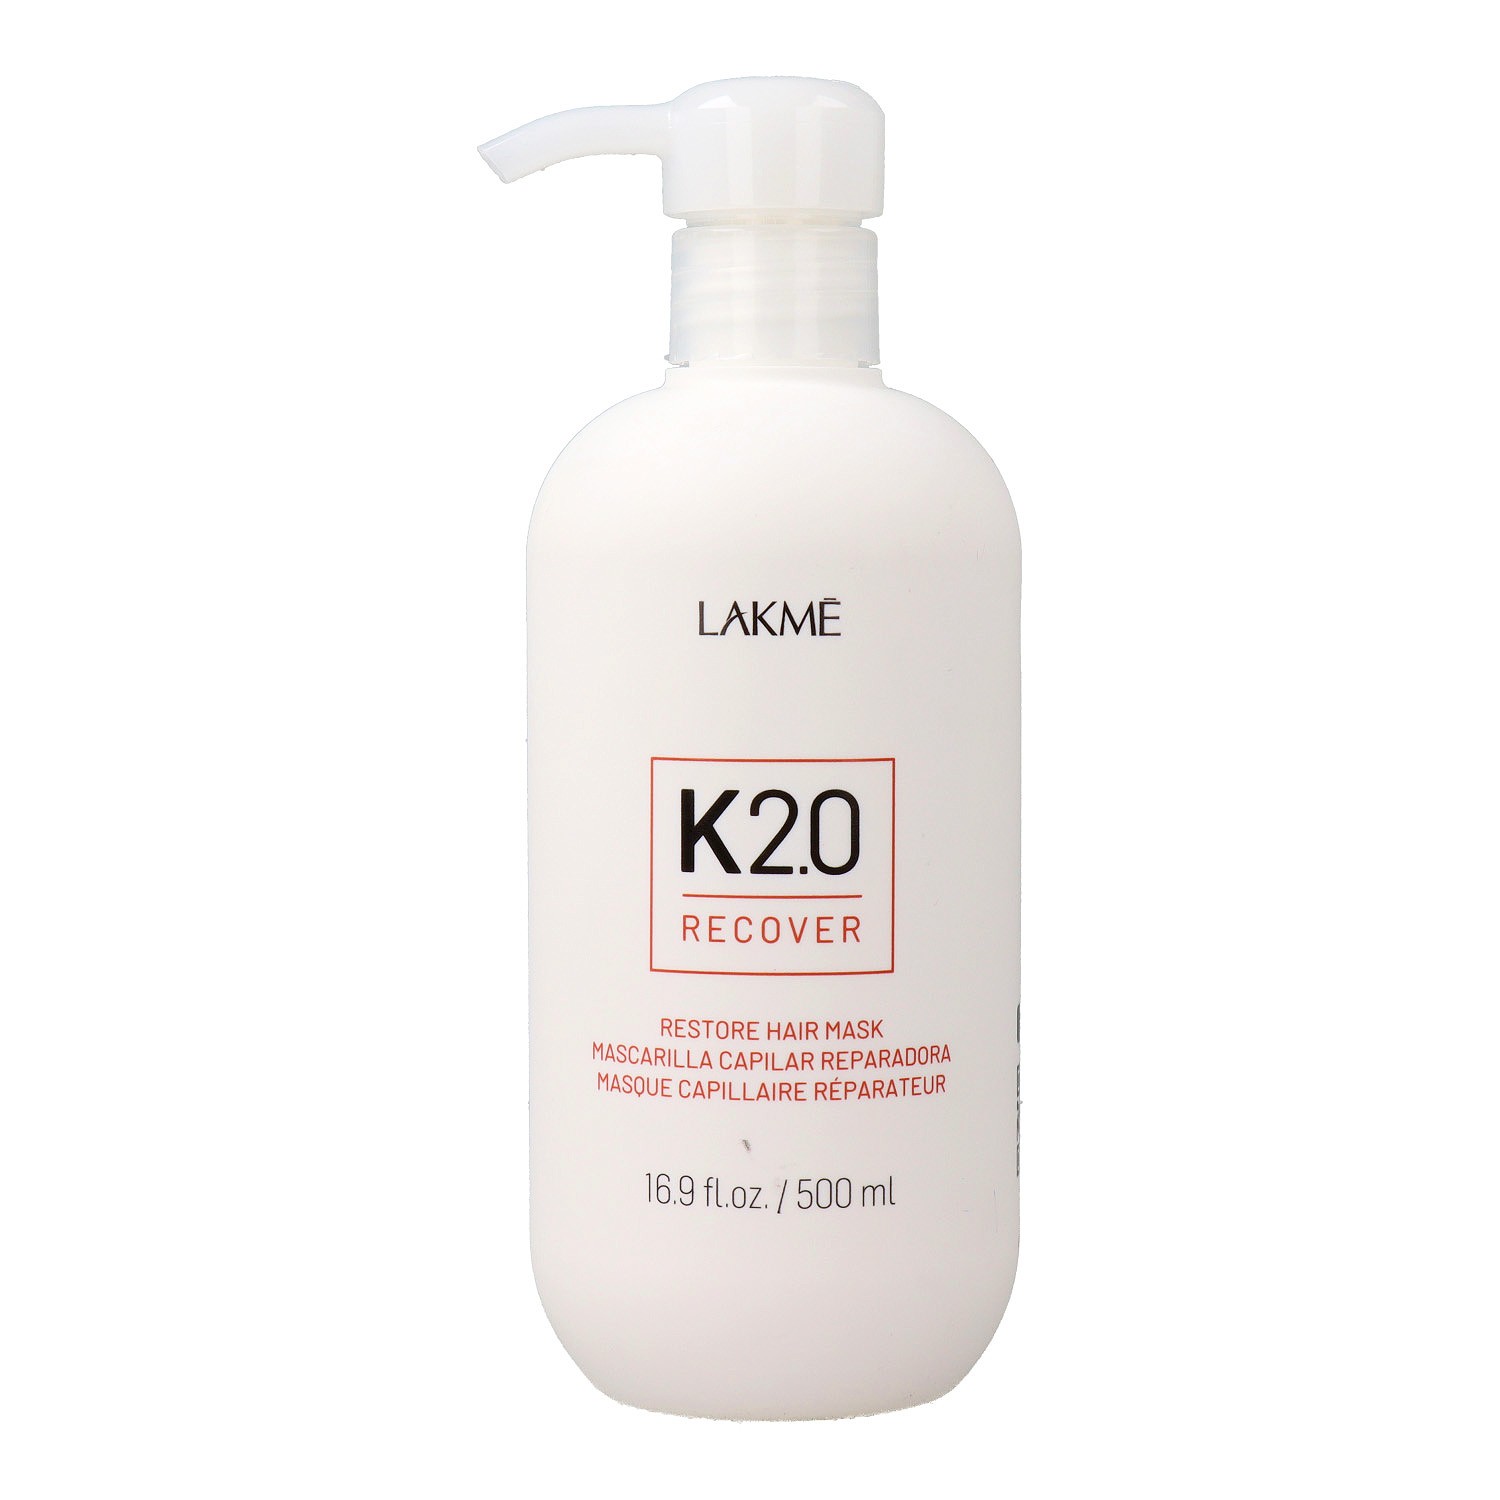 Lakme K2.0 Recover Repairing Mask 500 ml